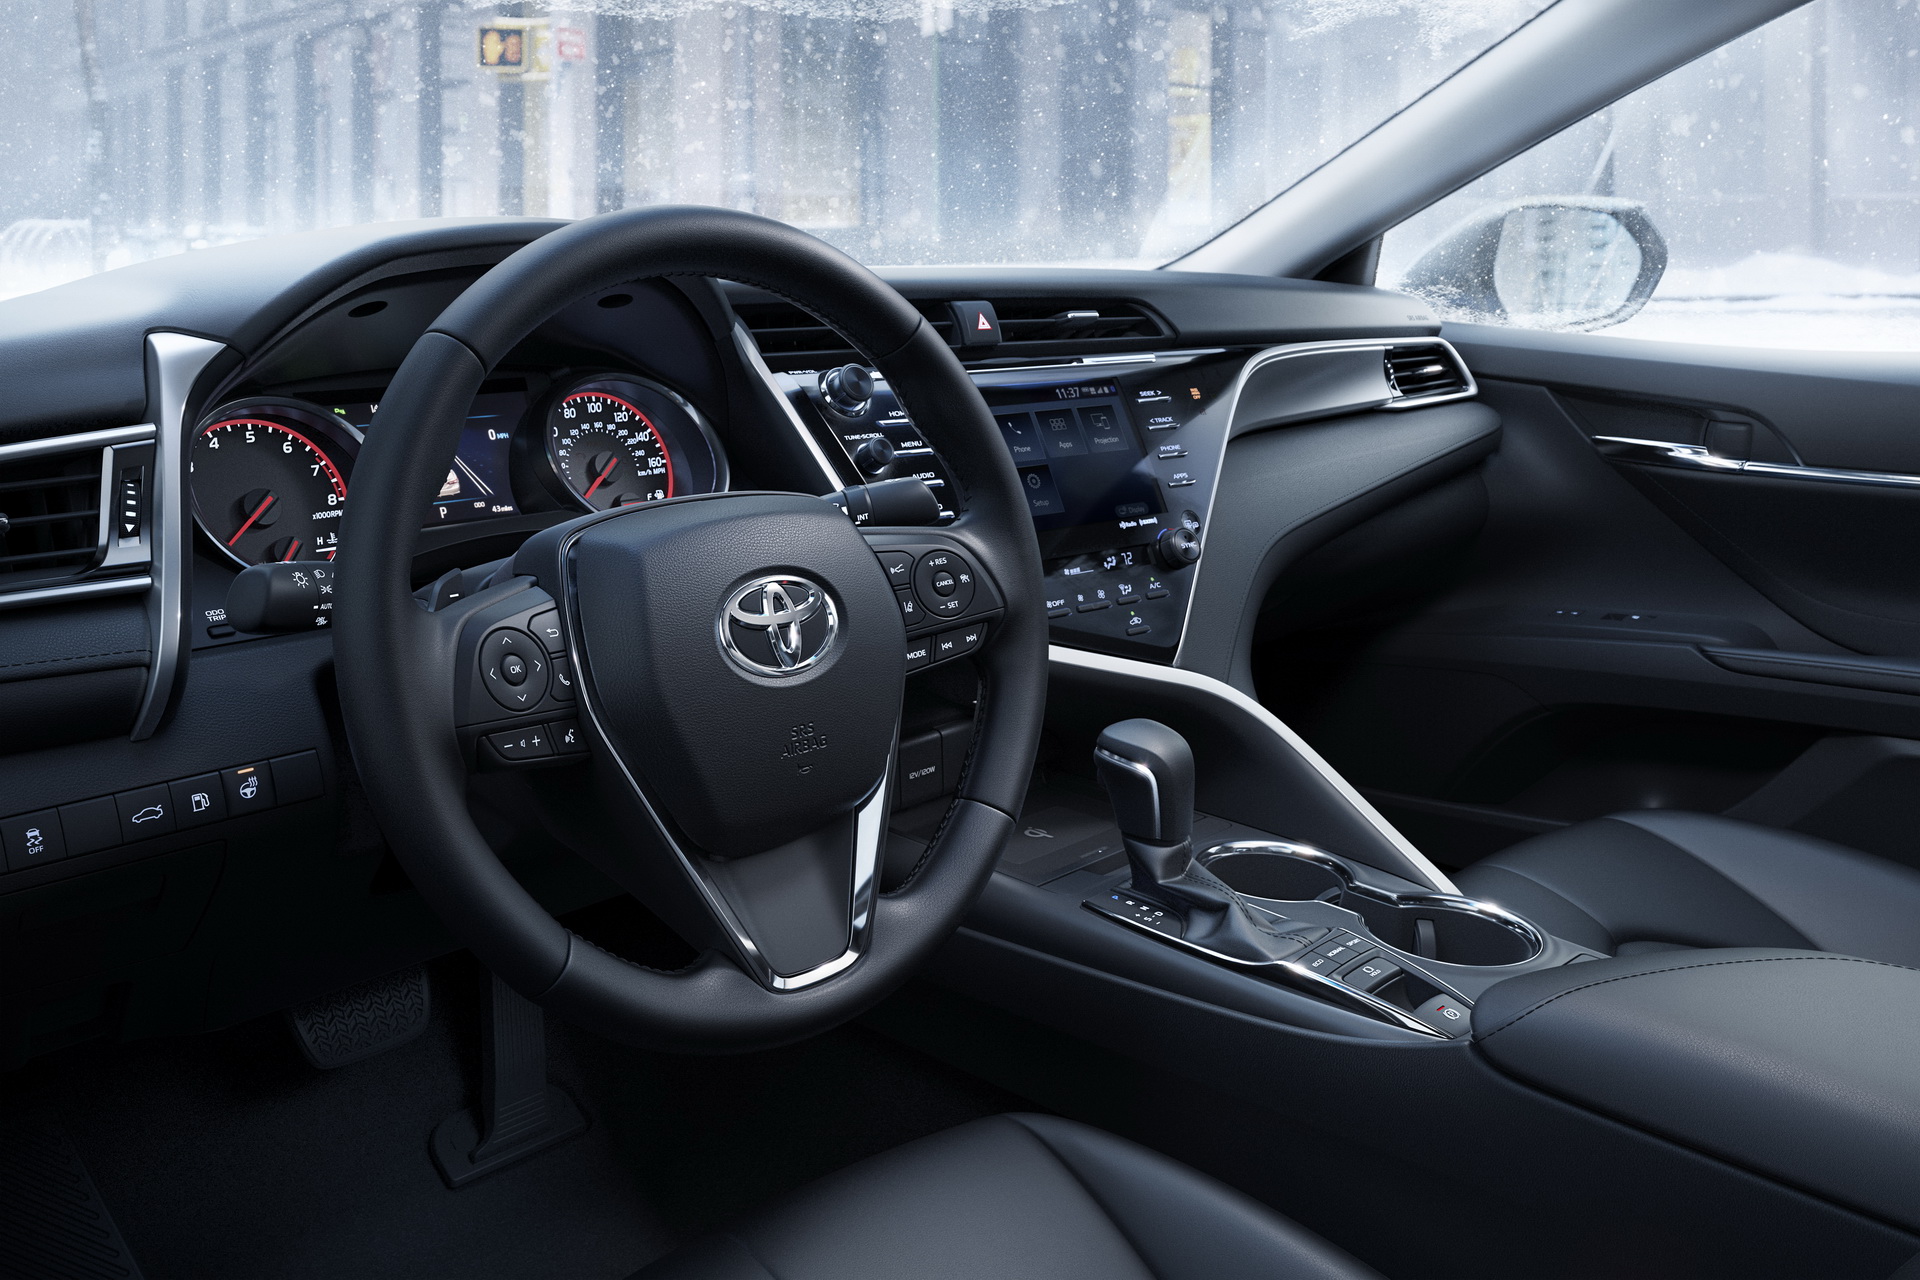 Toyota Camry AWD 2020 tại thị trường Mỹ, với giá khởi điểm là 26.370 USD